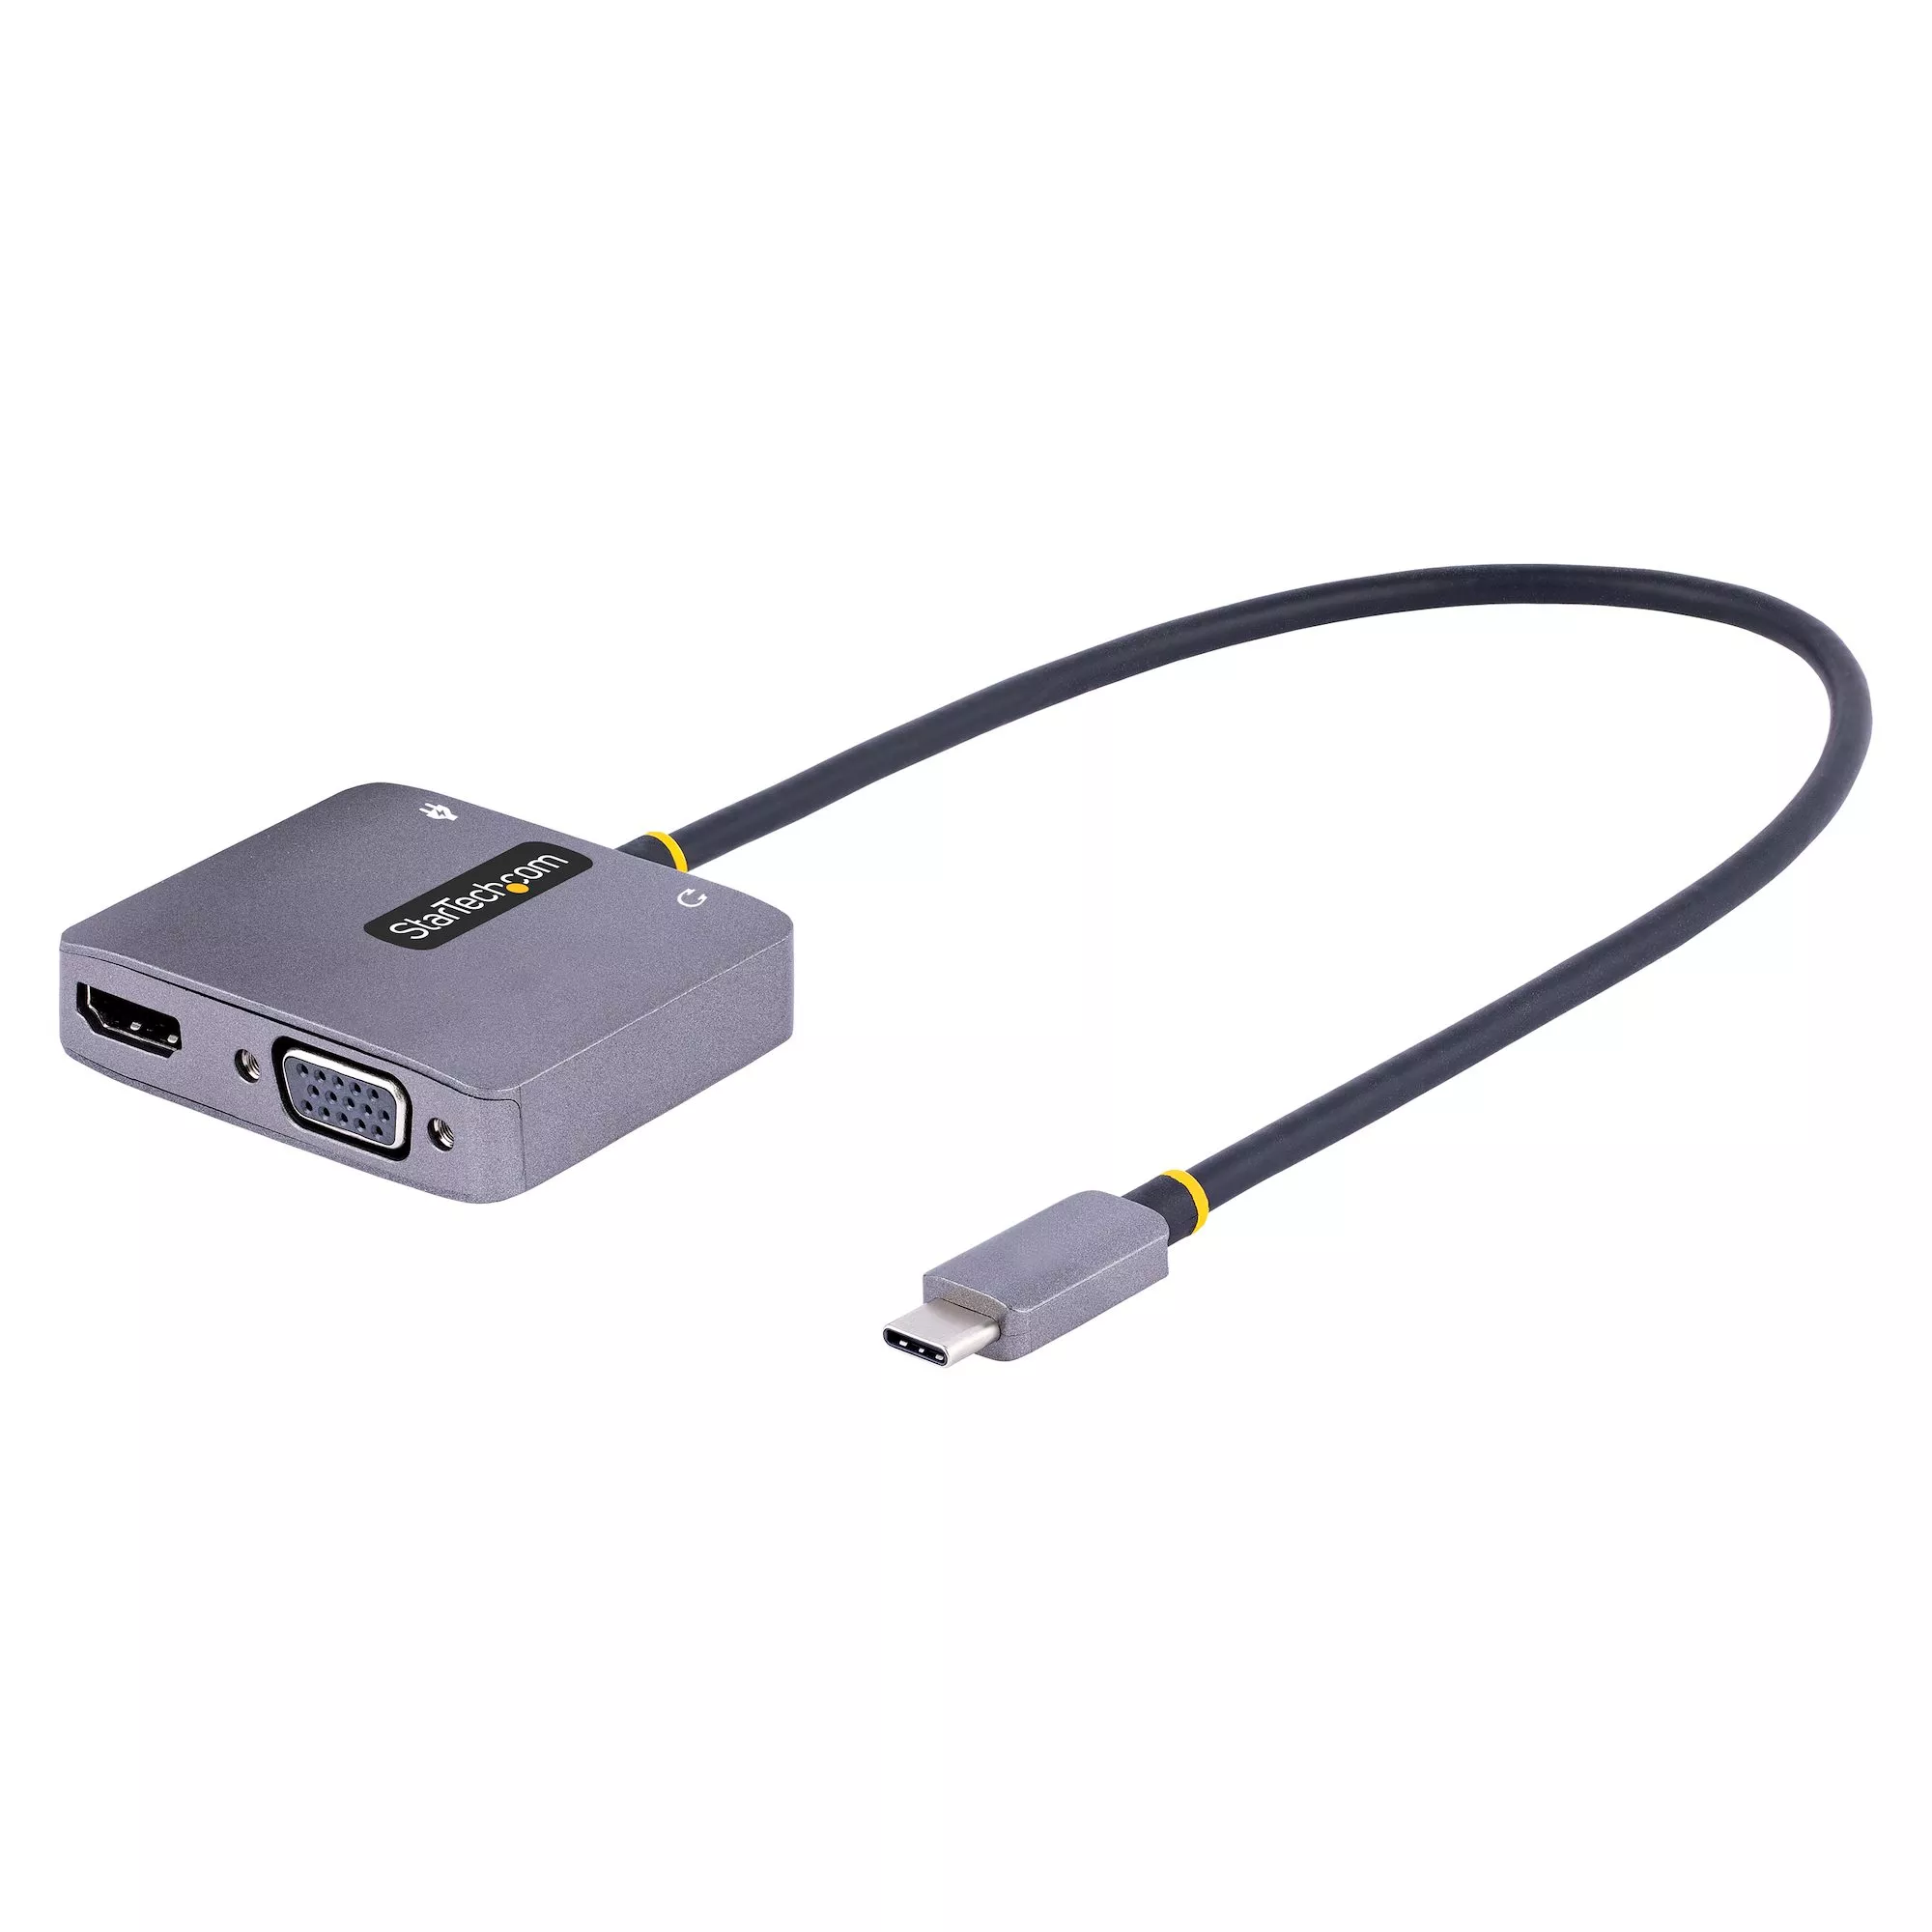 Achat StarTech.com Adaptateur USB C vers HDMI VGA avec Sortie sur hello RSE